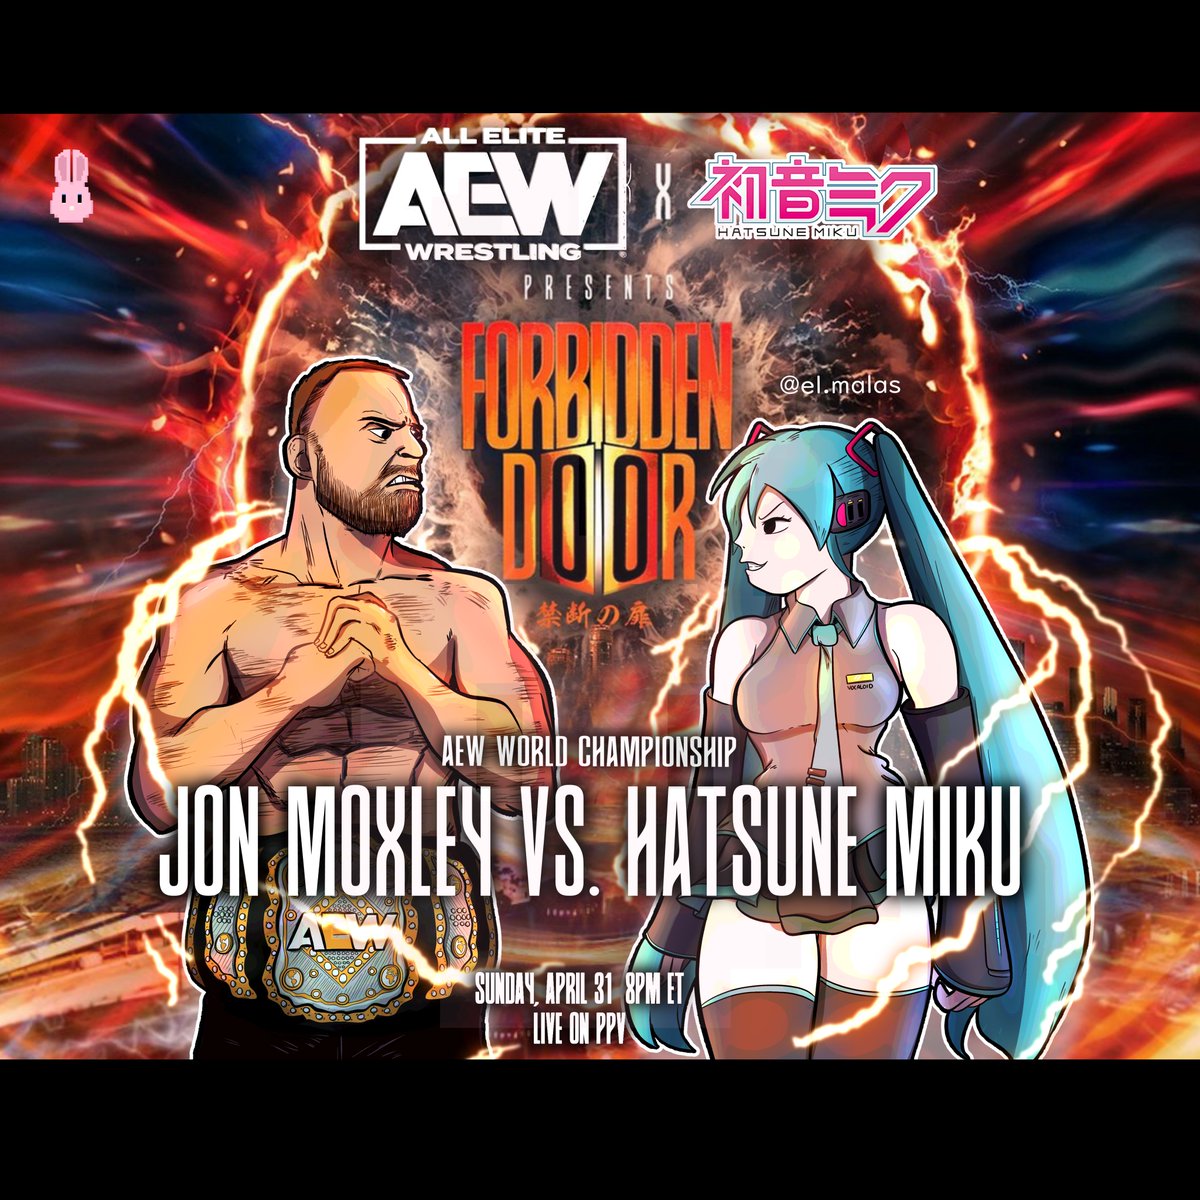 ¡New match announced for #AEWForbiddenDoor! 🚨

#AEWDynamite #HatsuneMiku